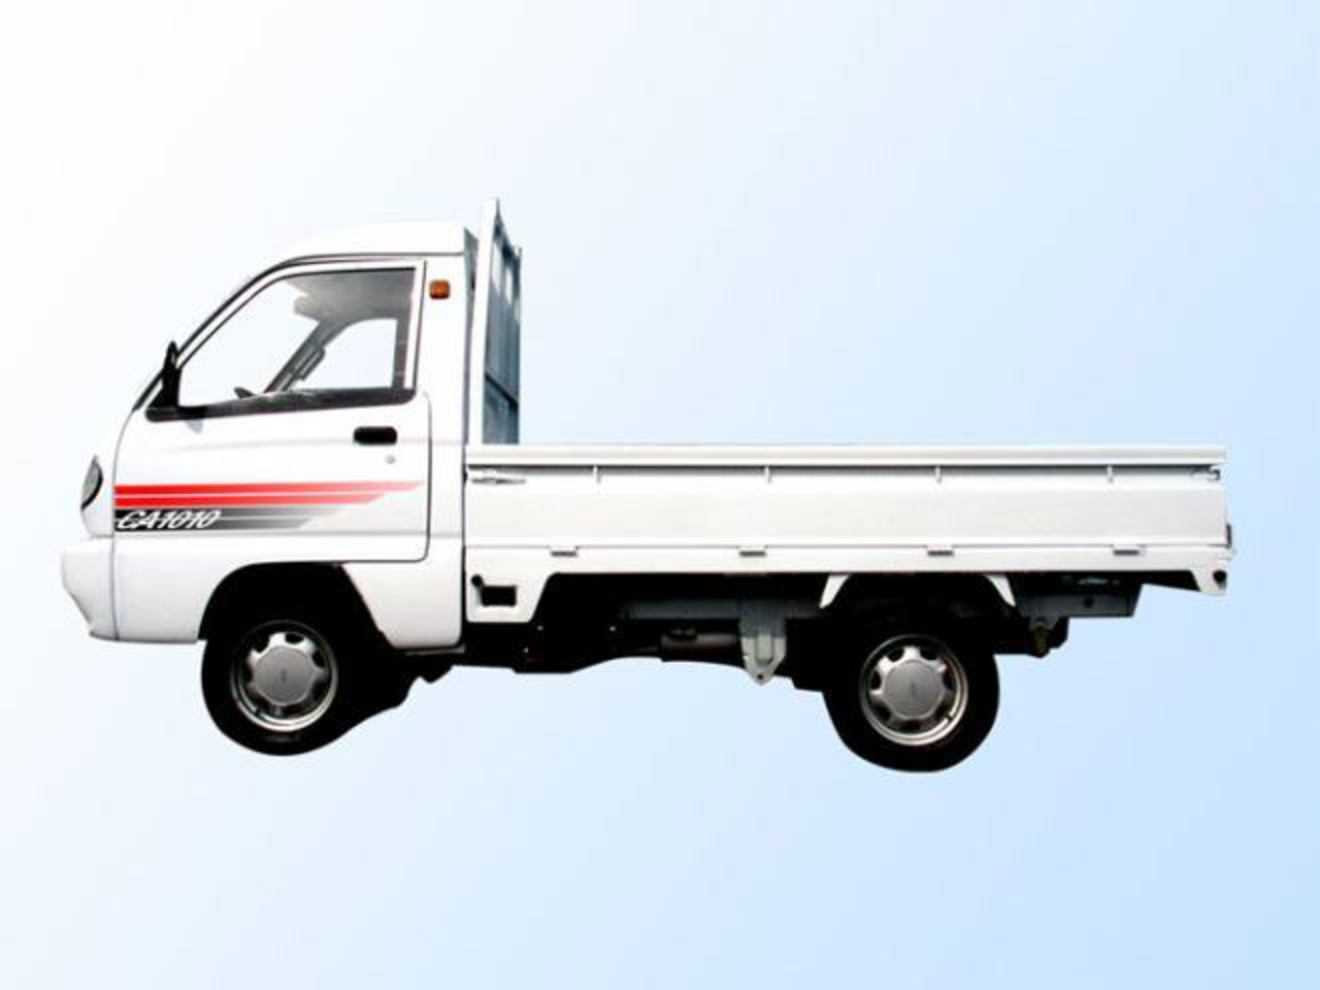 Faw (фав) 1010 — малотоннажный грузовик с экономичным расходом топлива